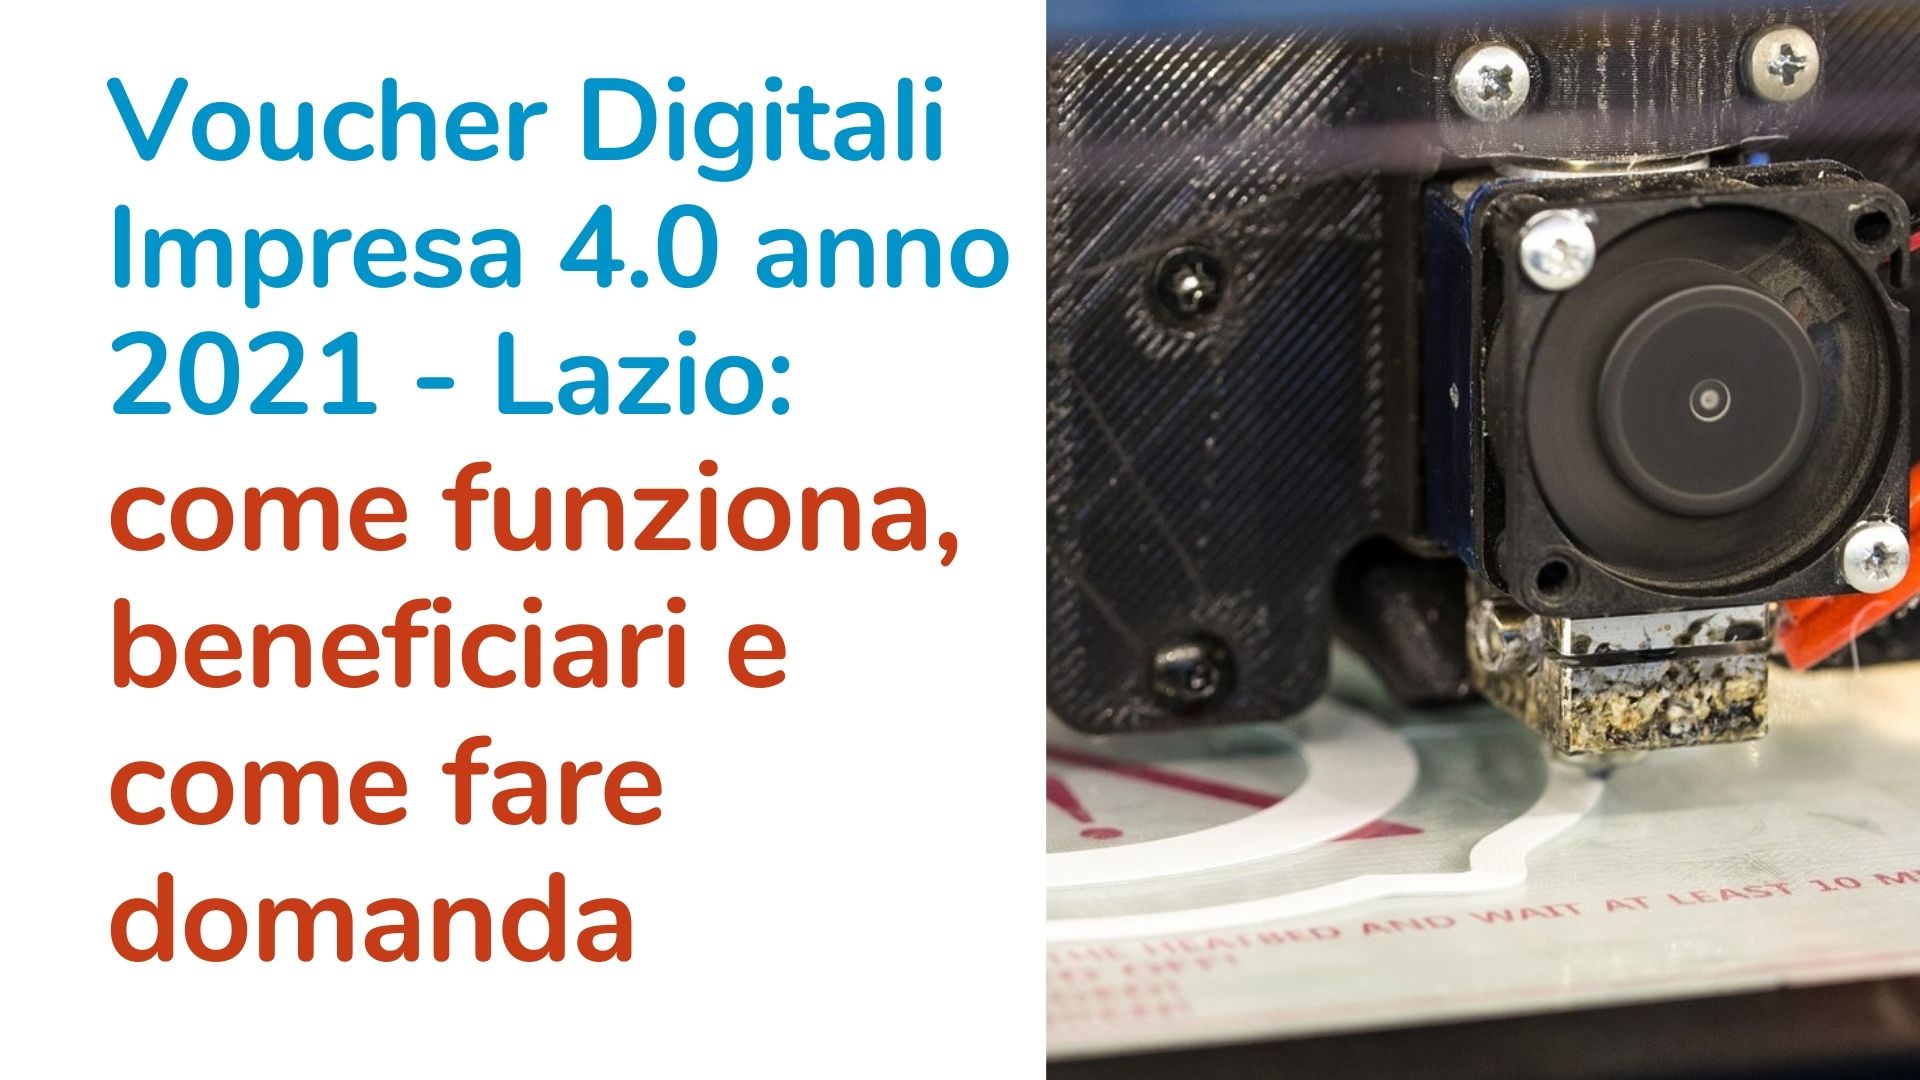 Voucher Digitali Impresa 4.0 anno 2021 – Lazio: come funziona, beneficiari e come fare domanda